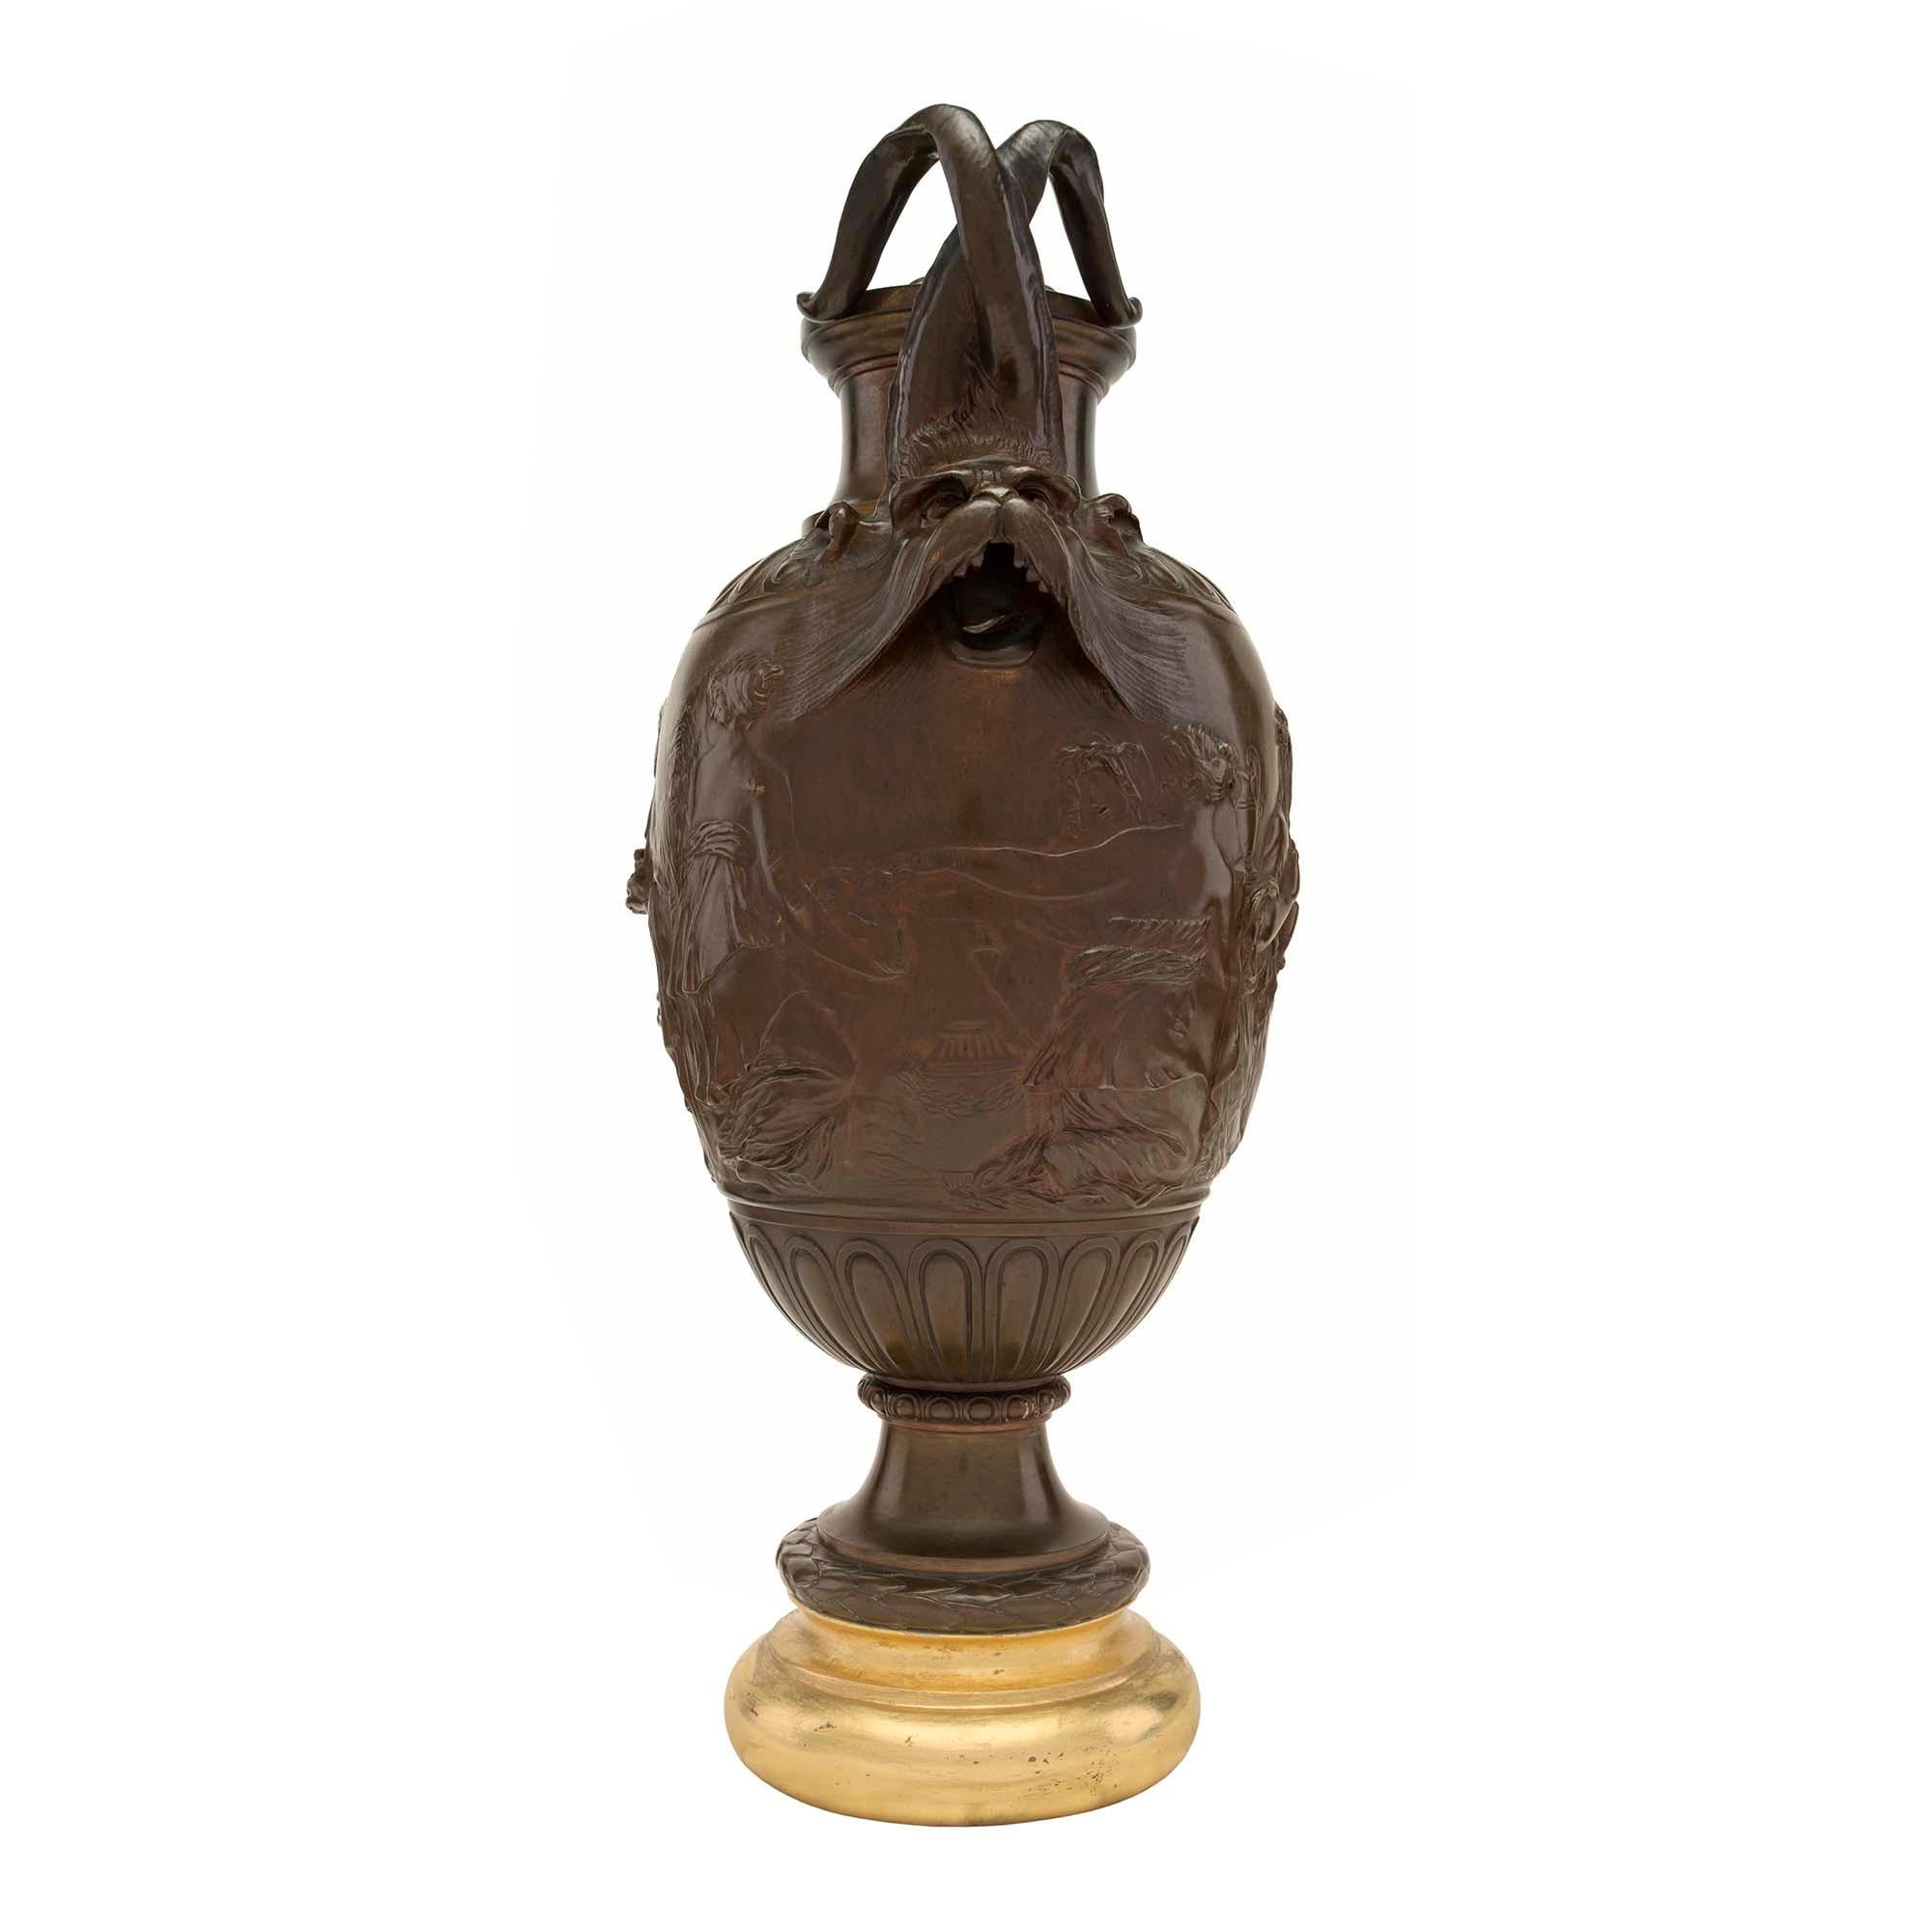 Une belle paire d'urnes françaises du 19e siècle, de style Renaissance, en bronze patiné et bois doré. Chaque urne est surmontée d'une base circulaire en bois doré moucheté et d'un socle en bronze patiné décoré d'une bande de lauriers et d'un motif